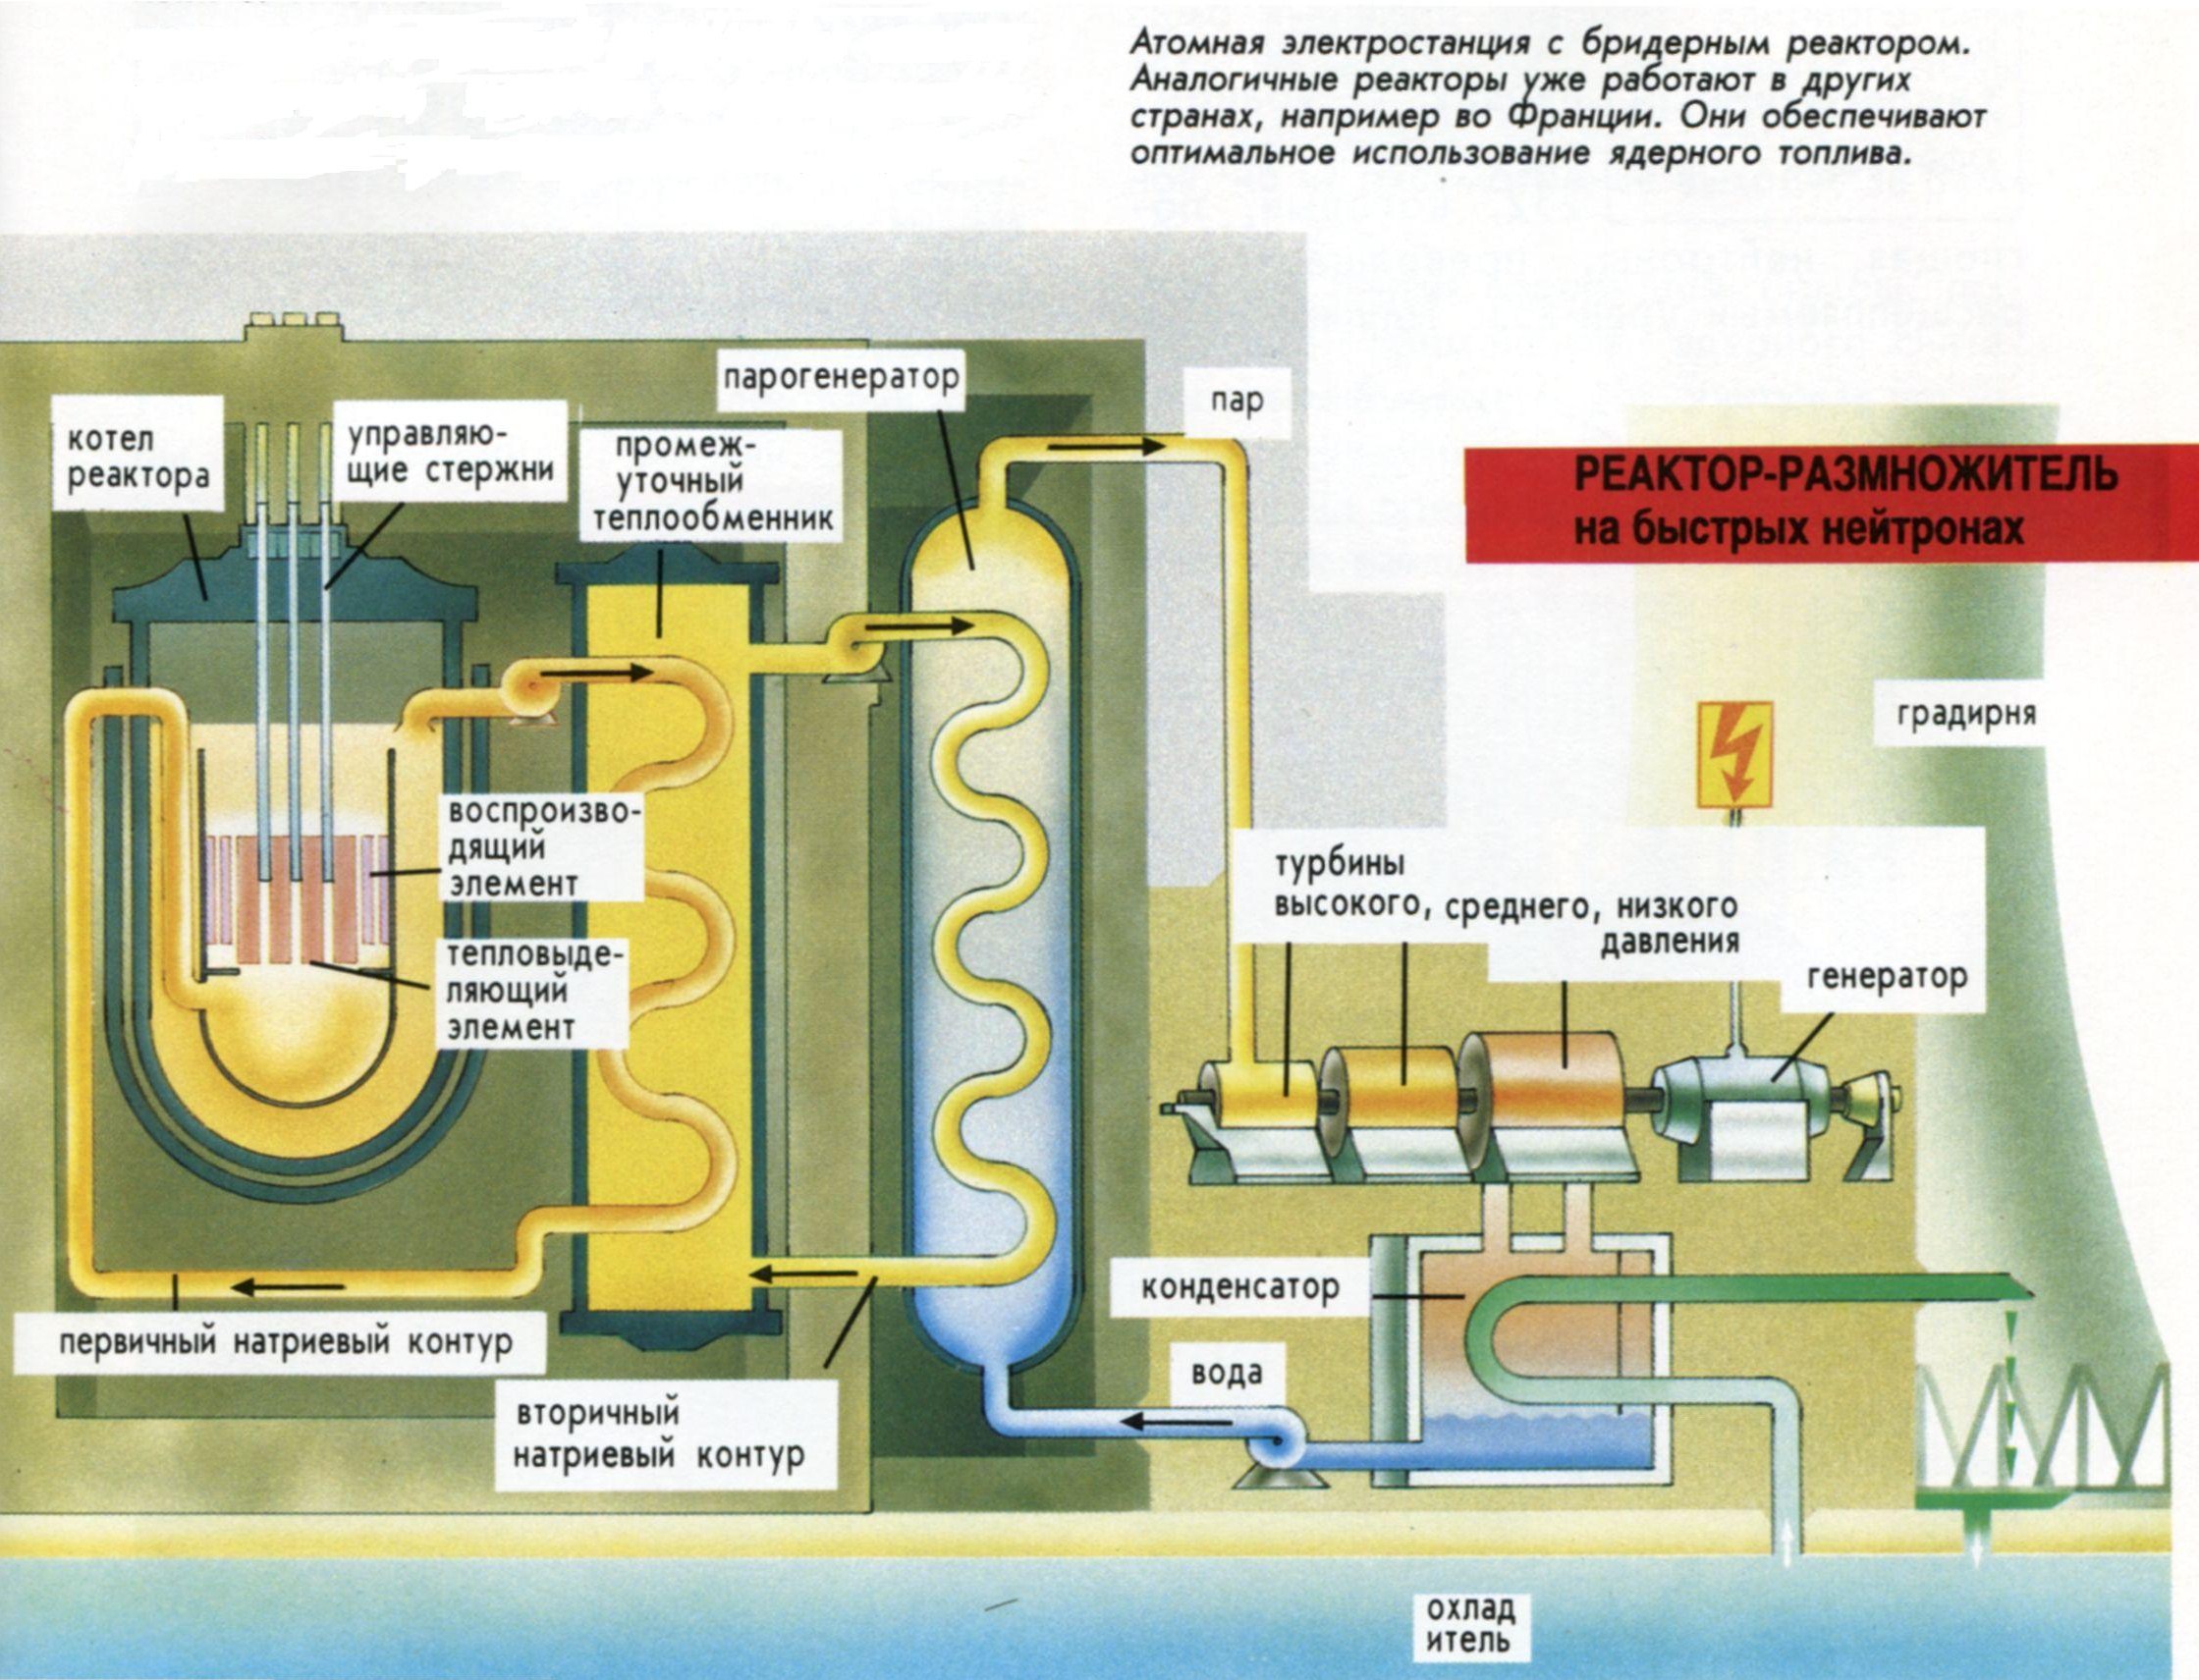 С легким паром после пуска аэс. Принцип работы ядерного реактора схема. Схема работы реактора. Как выглядит ядерный реактор схема. Атомная электростанция реактор схема.